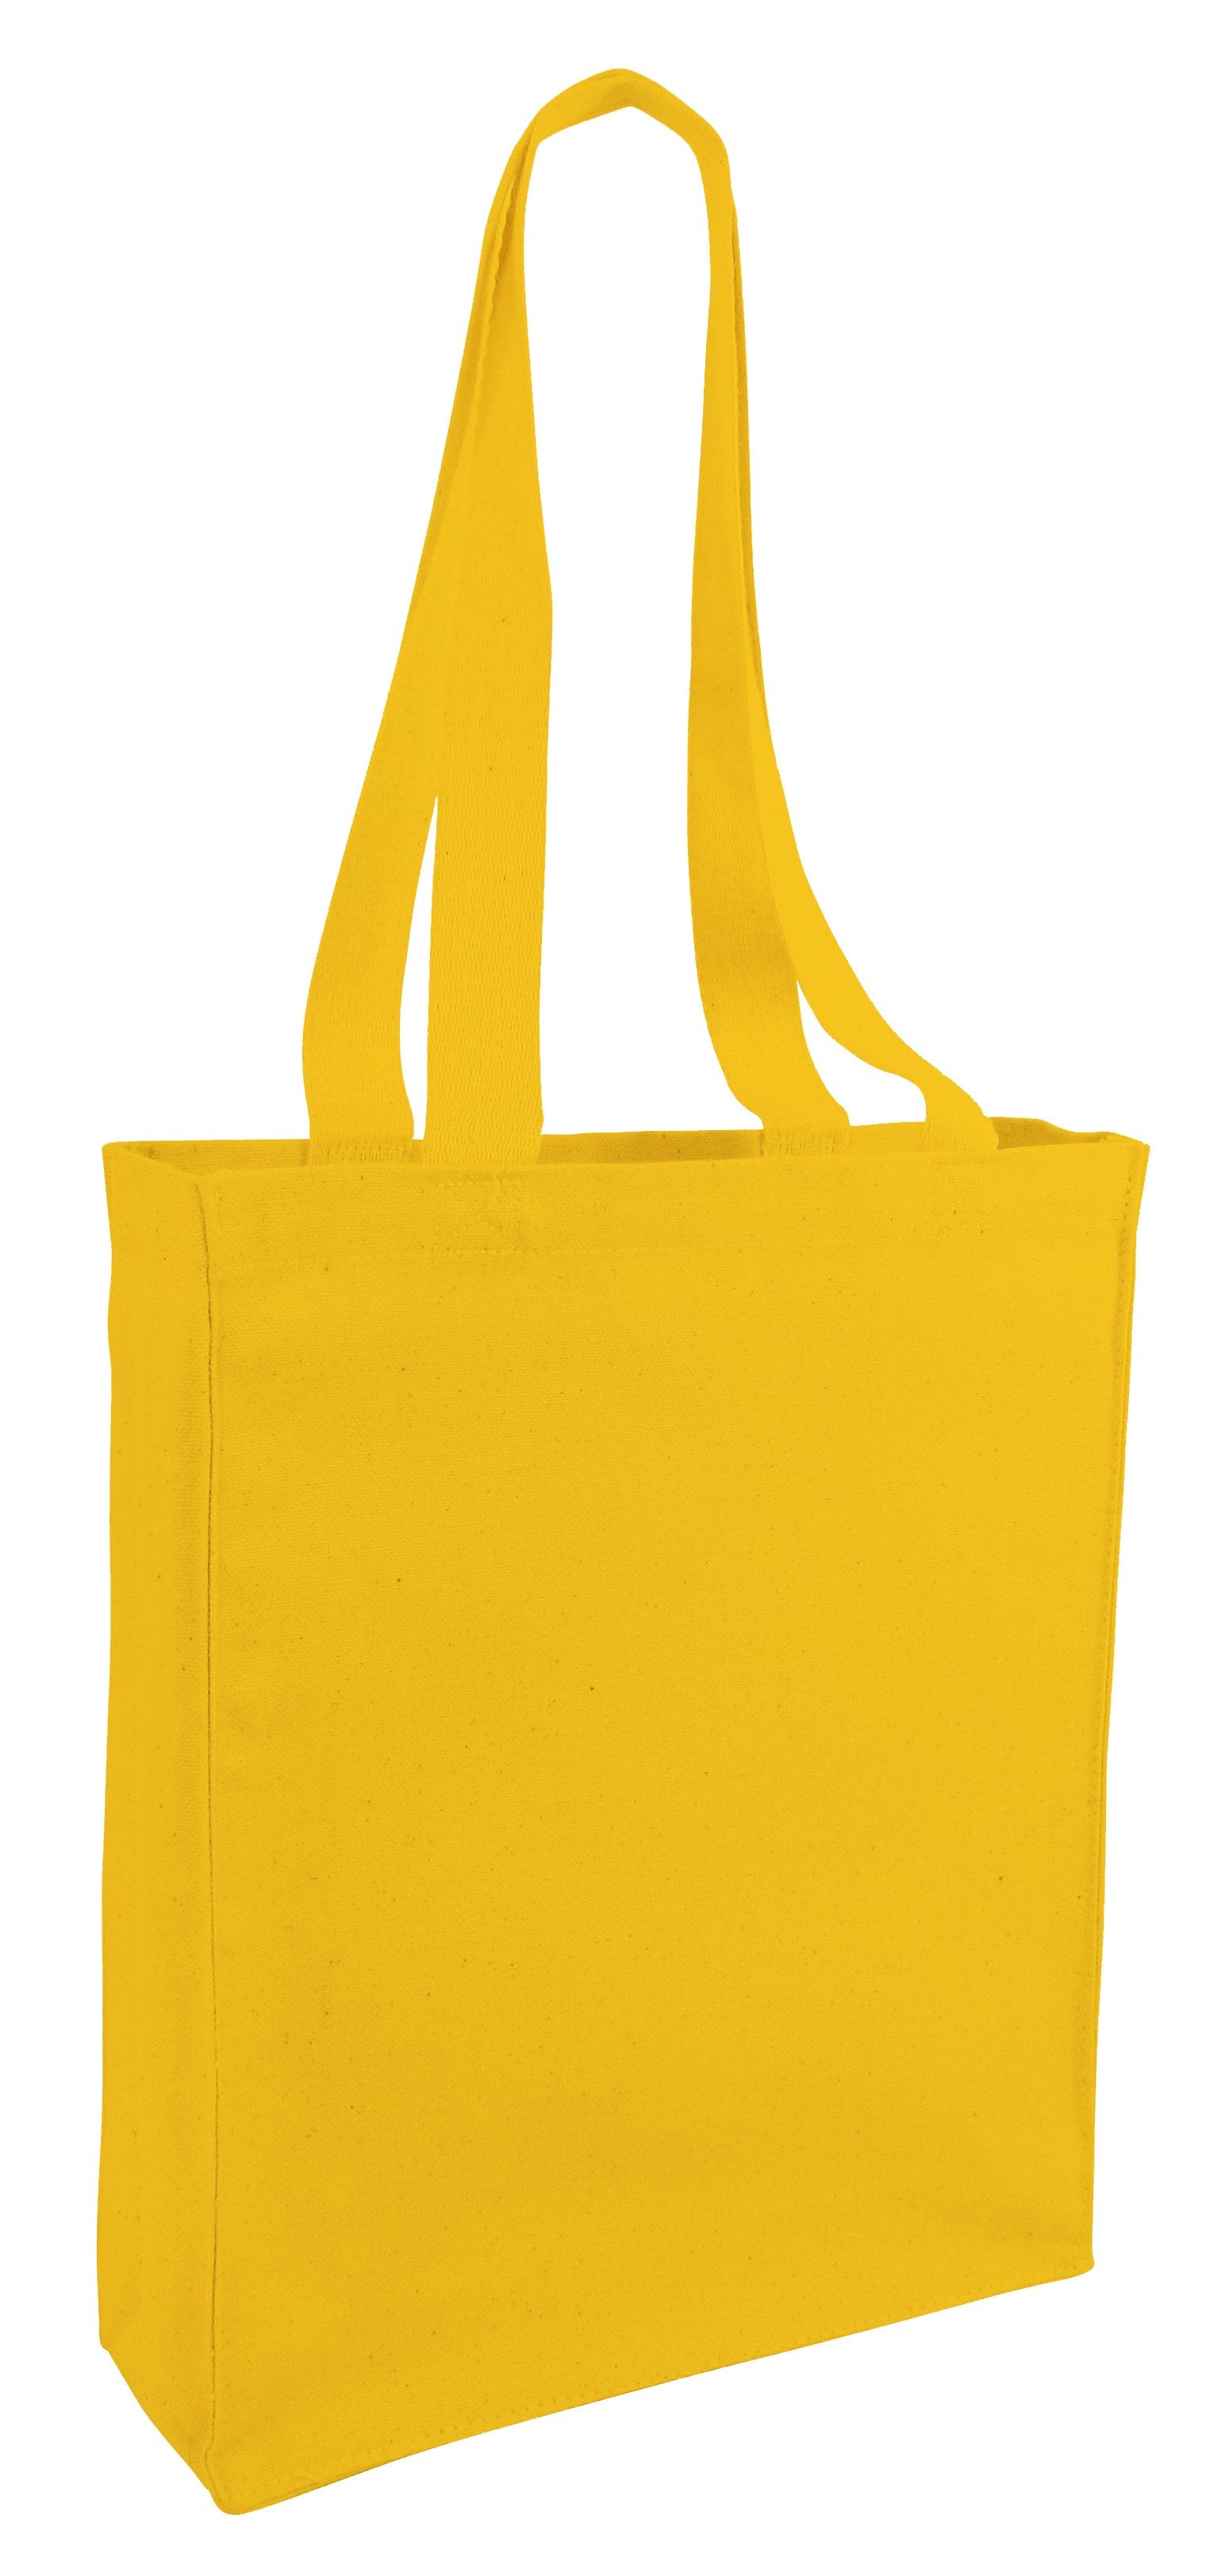 Reversible Fabric Handbags - directcreate.com